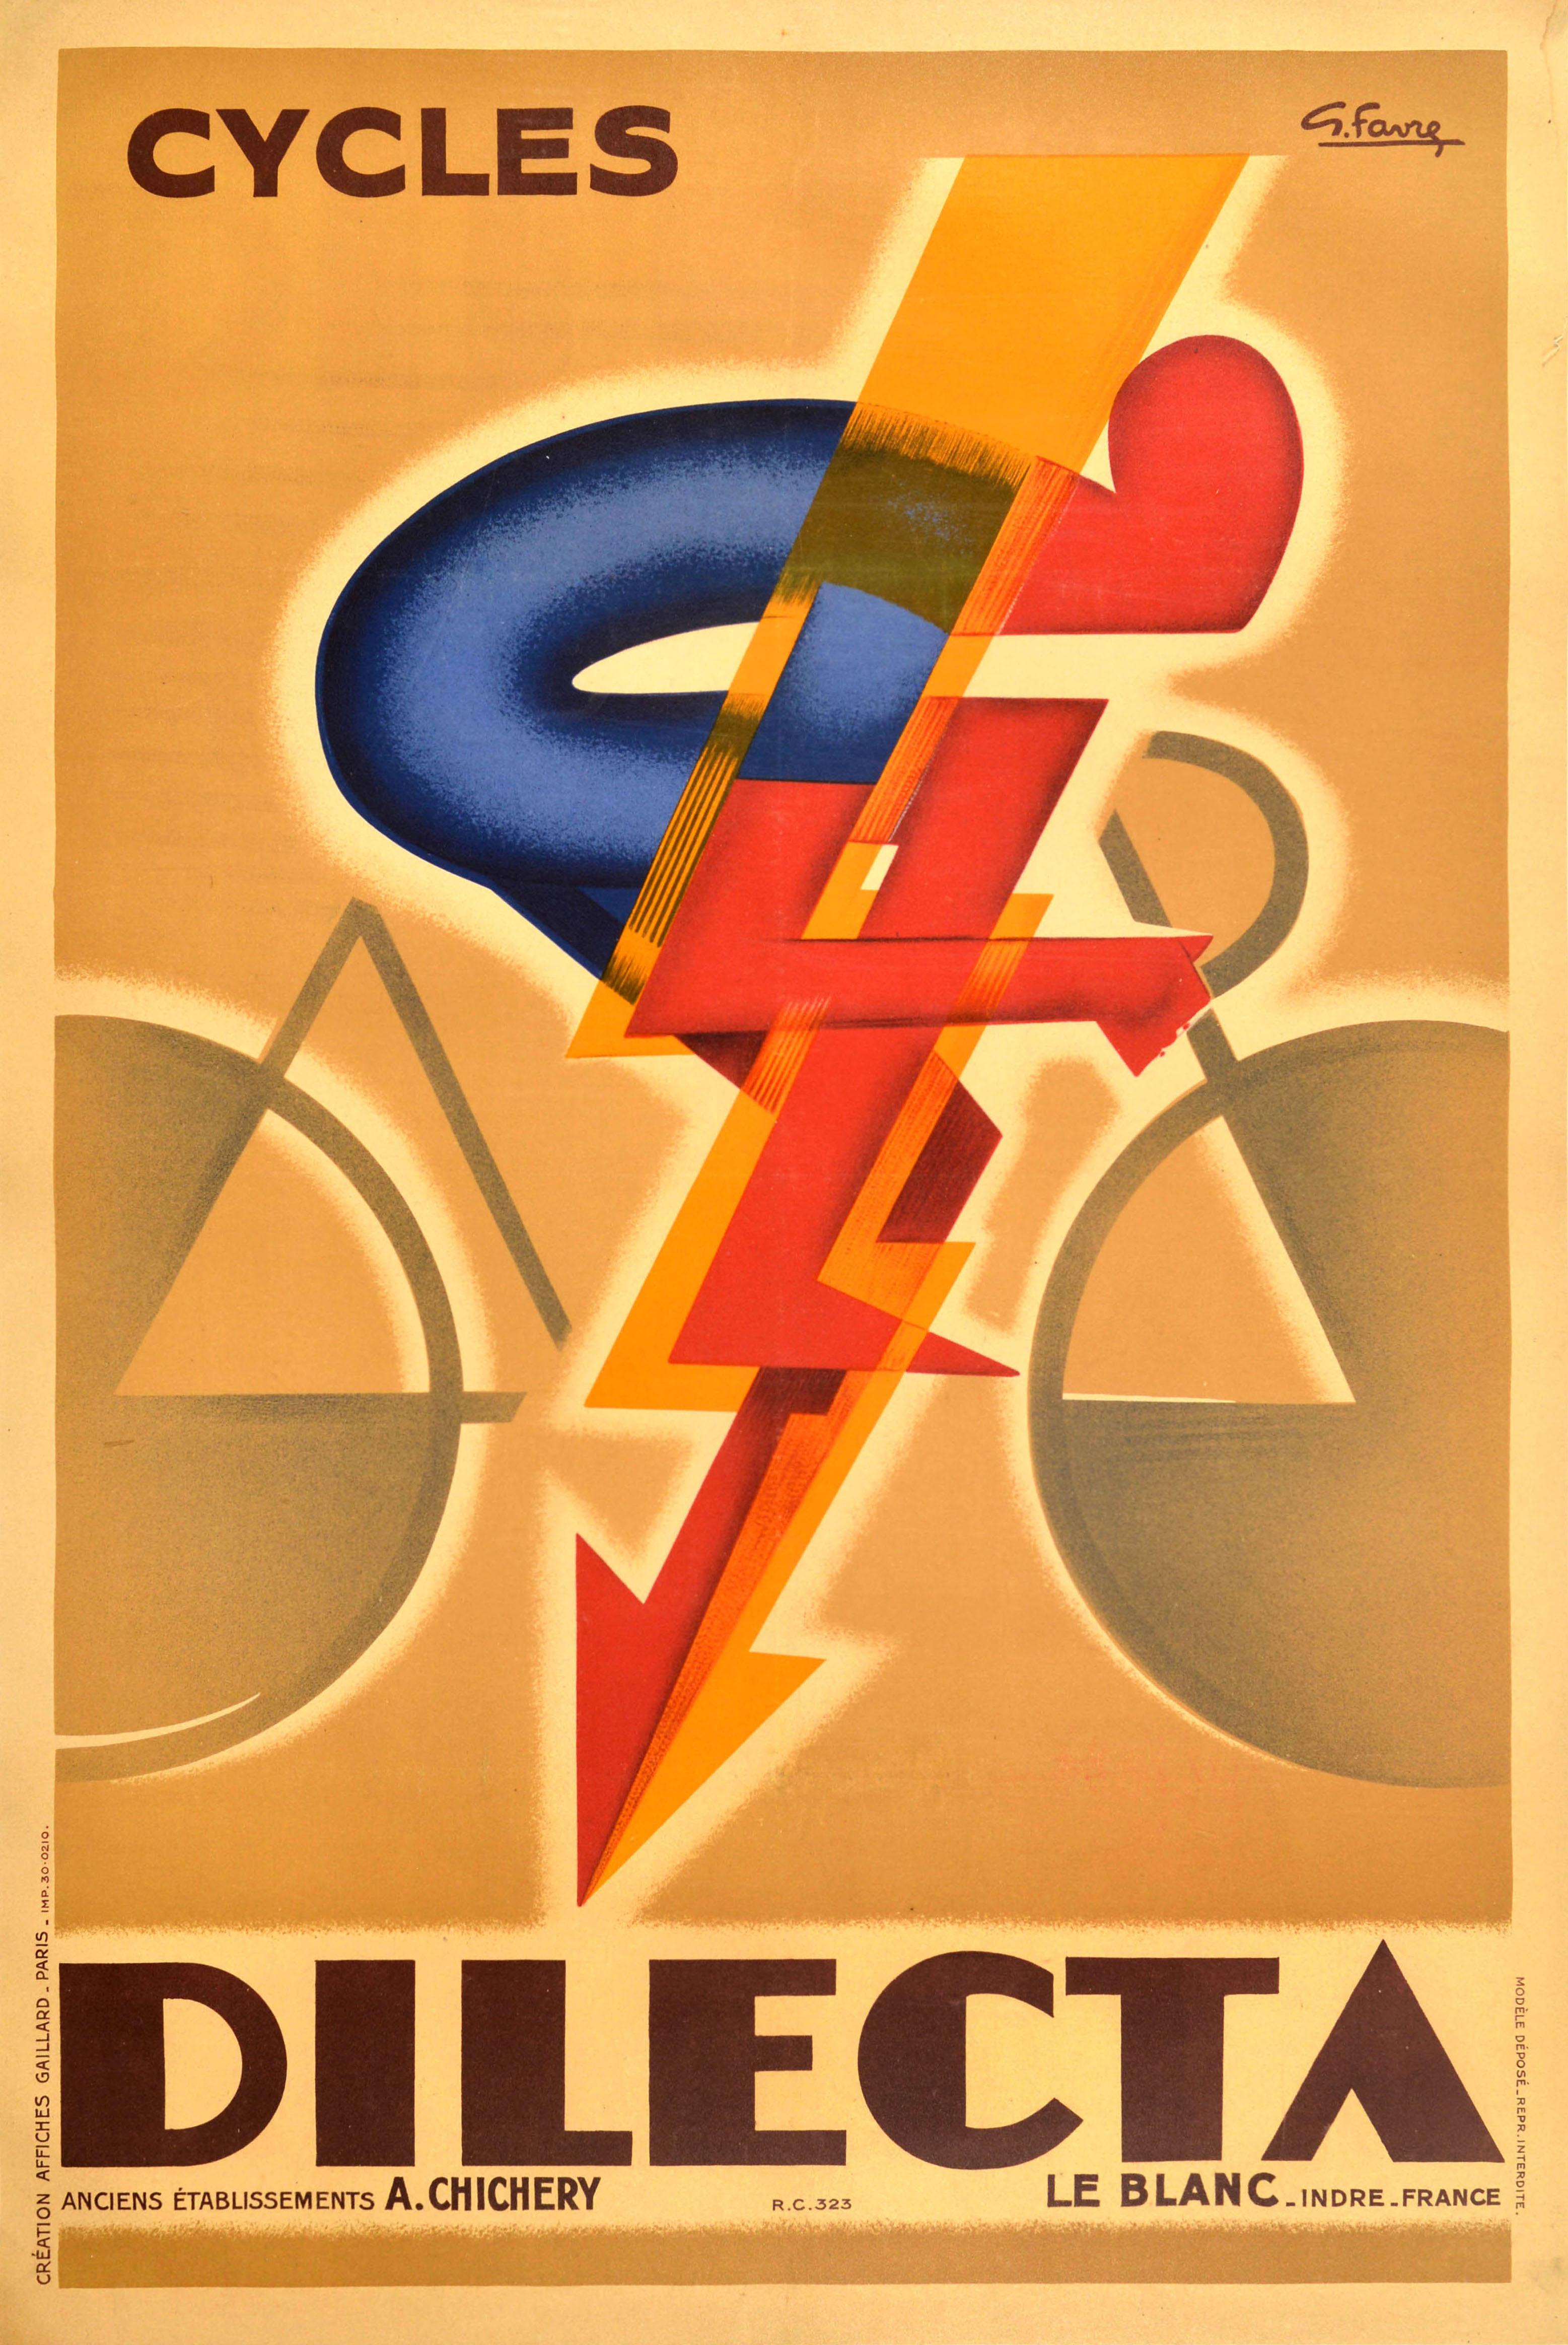 Originales antikes Werbeplakat für eine französische Fahrradmarke - Cycles Dilecta - mit einem farbenfrohen, dynamischen Art-Déco-Motiv, das eine stilisierte Figur eines nach vorne gelehnten Radfahrers zeigt, der mit hoher Geschwindigkeit auf einem